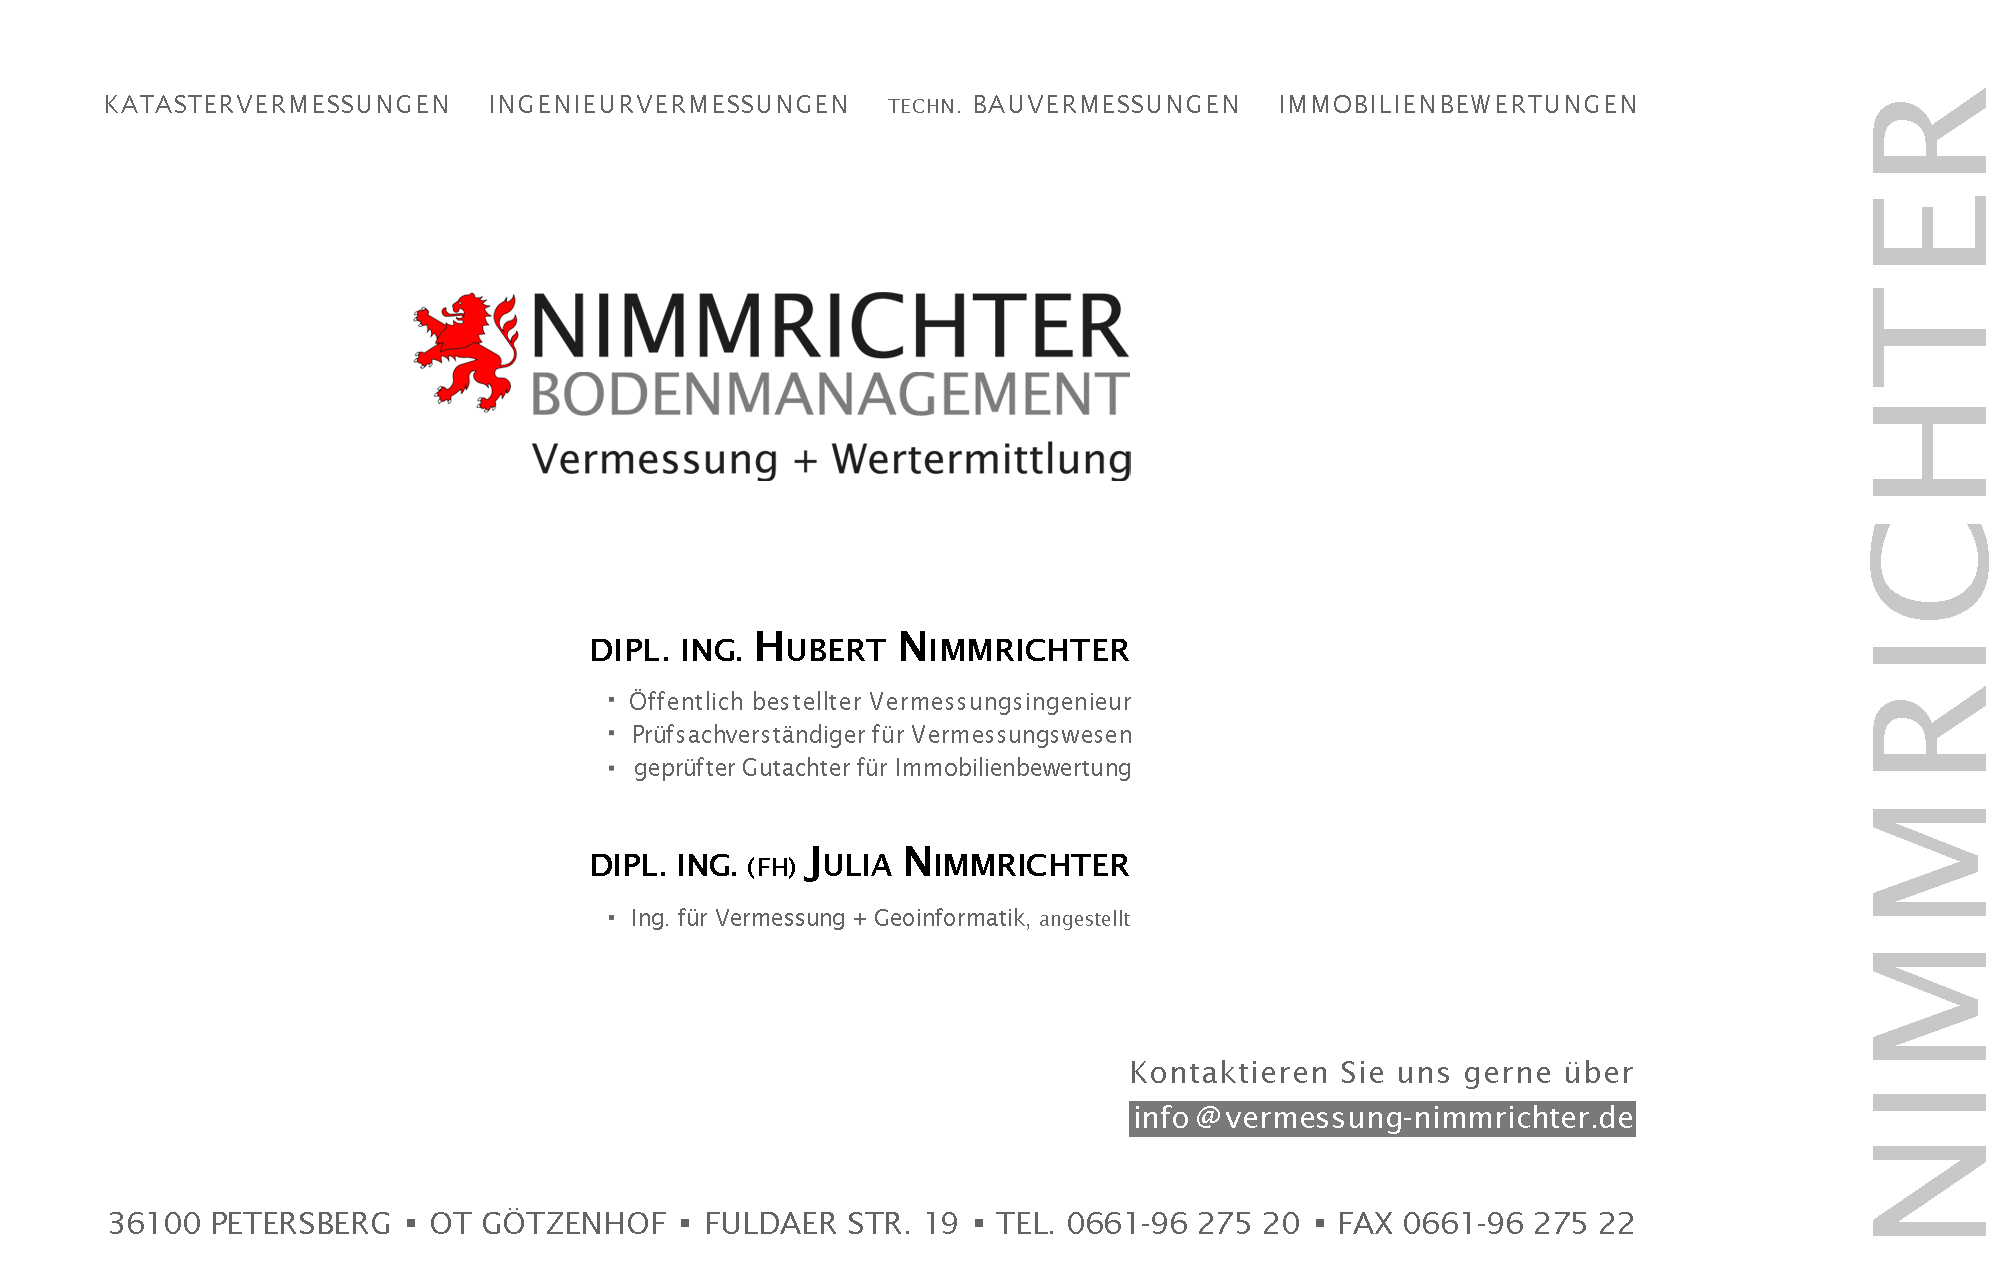 Nimmrichter Bodenmanagement - Vermessung und Wertermittlung | Tel. 0661 - 96 275 20